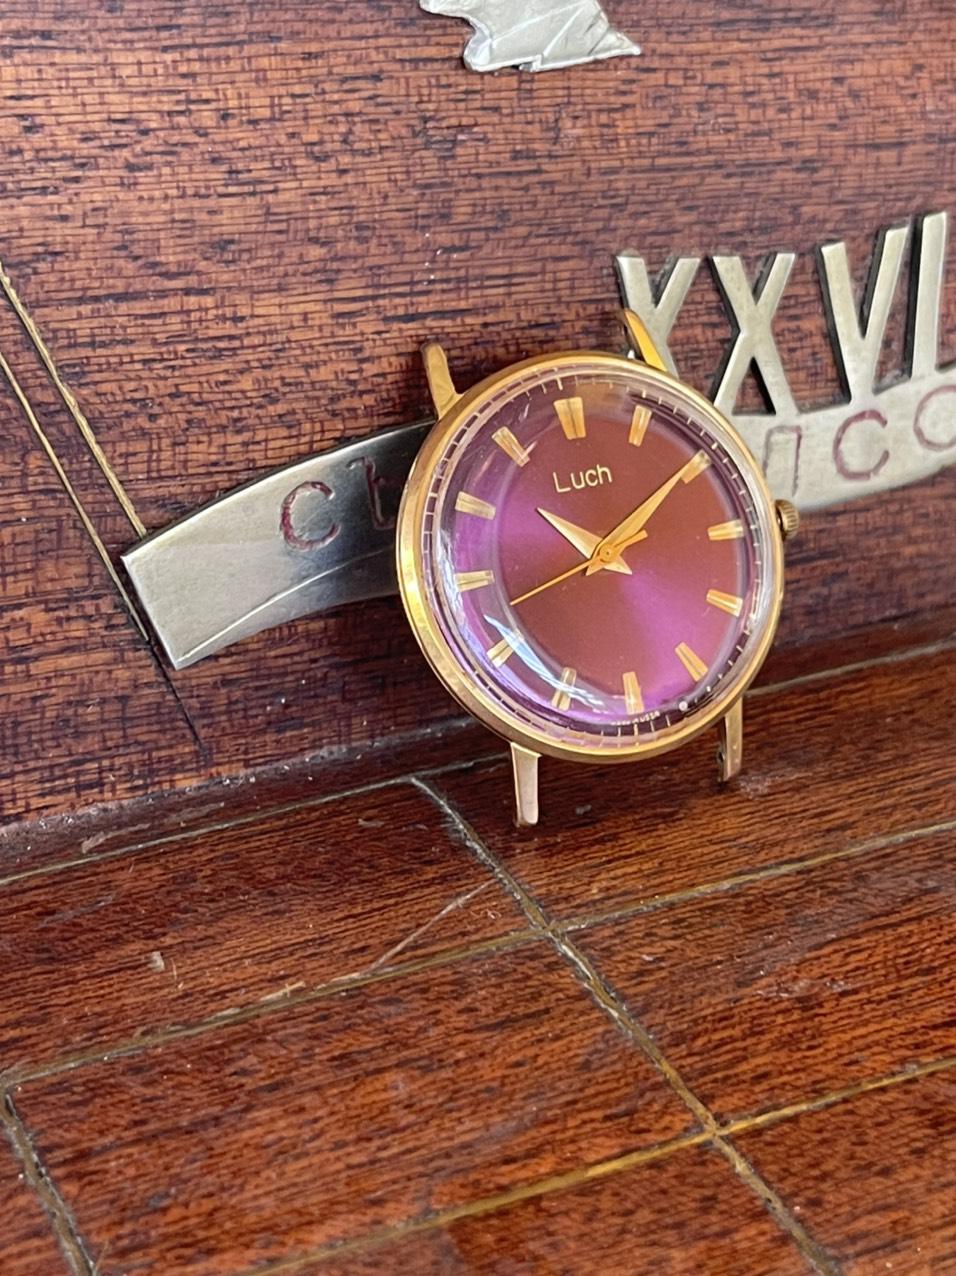 Mua đồng hồ nga cũ chính hãng 100%, bảo hành 1 năm, hàng sẵn, giao hàng tận nơi